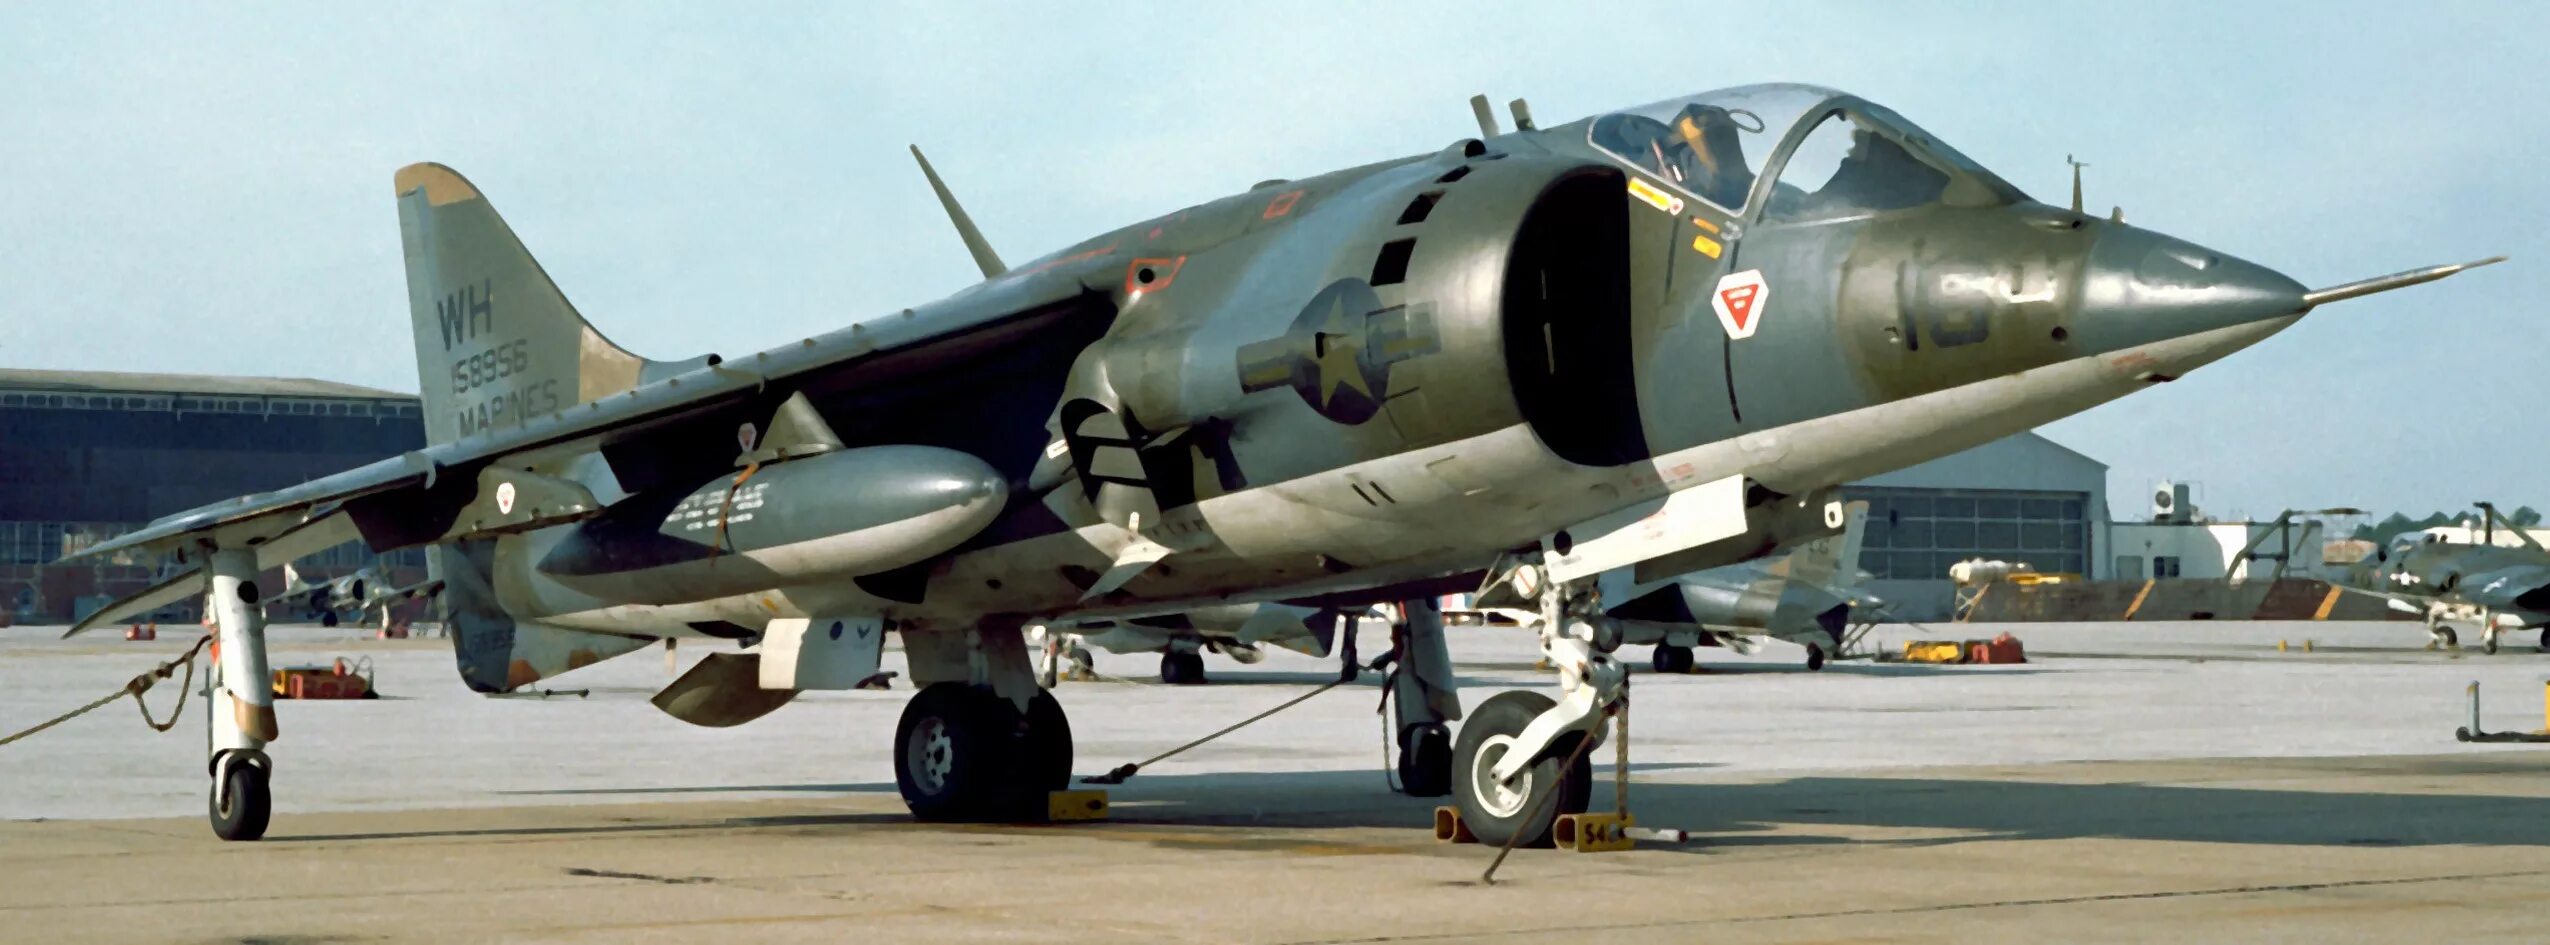 Av-8a Harrier. Харриер 2 самолет. Харриер av-8a самолет. Hasegawa av-8a Harrier. Av 08fb